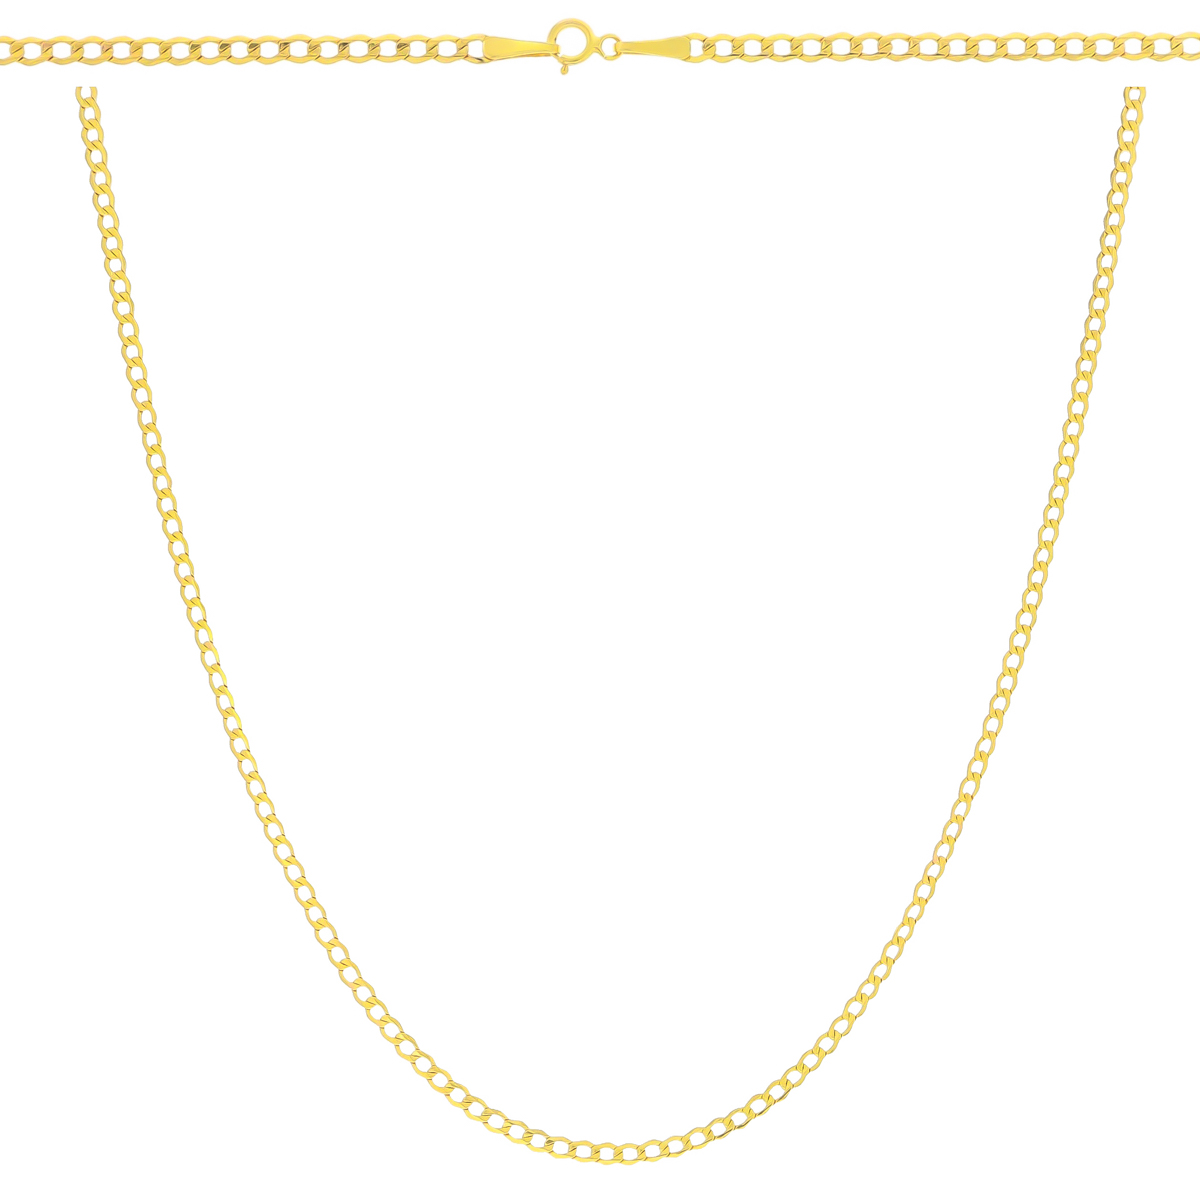 Złoty łańcuszek Pancerka 50 cm pr. 585